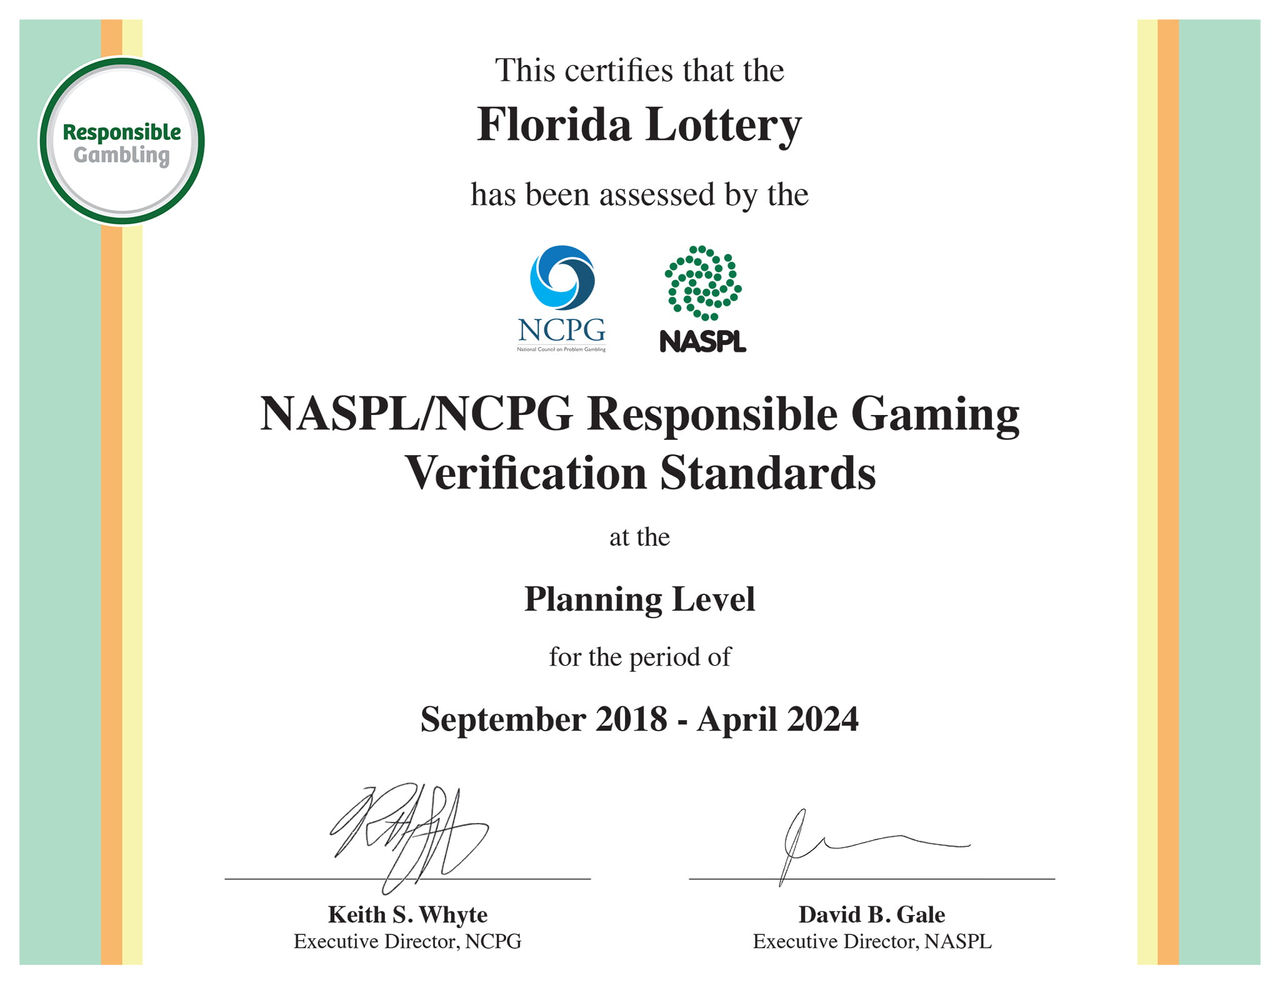 NASPL/NCPG Certificate